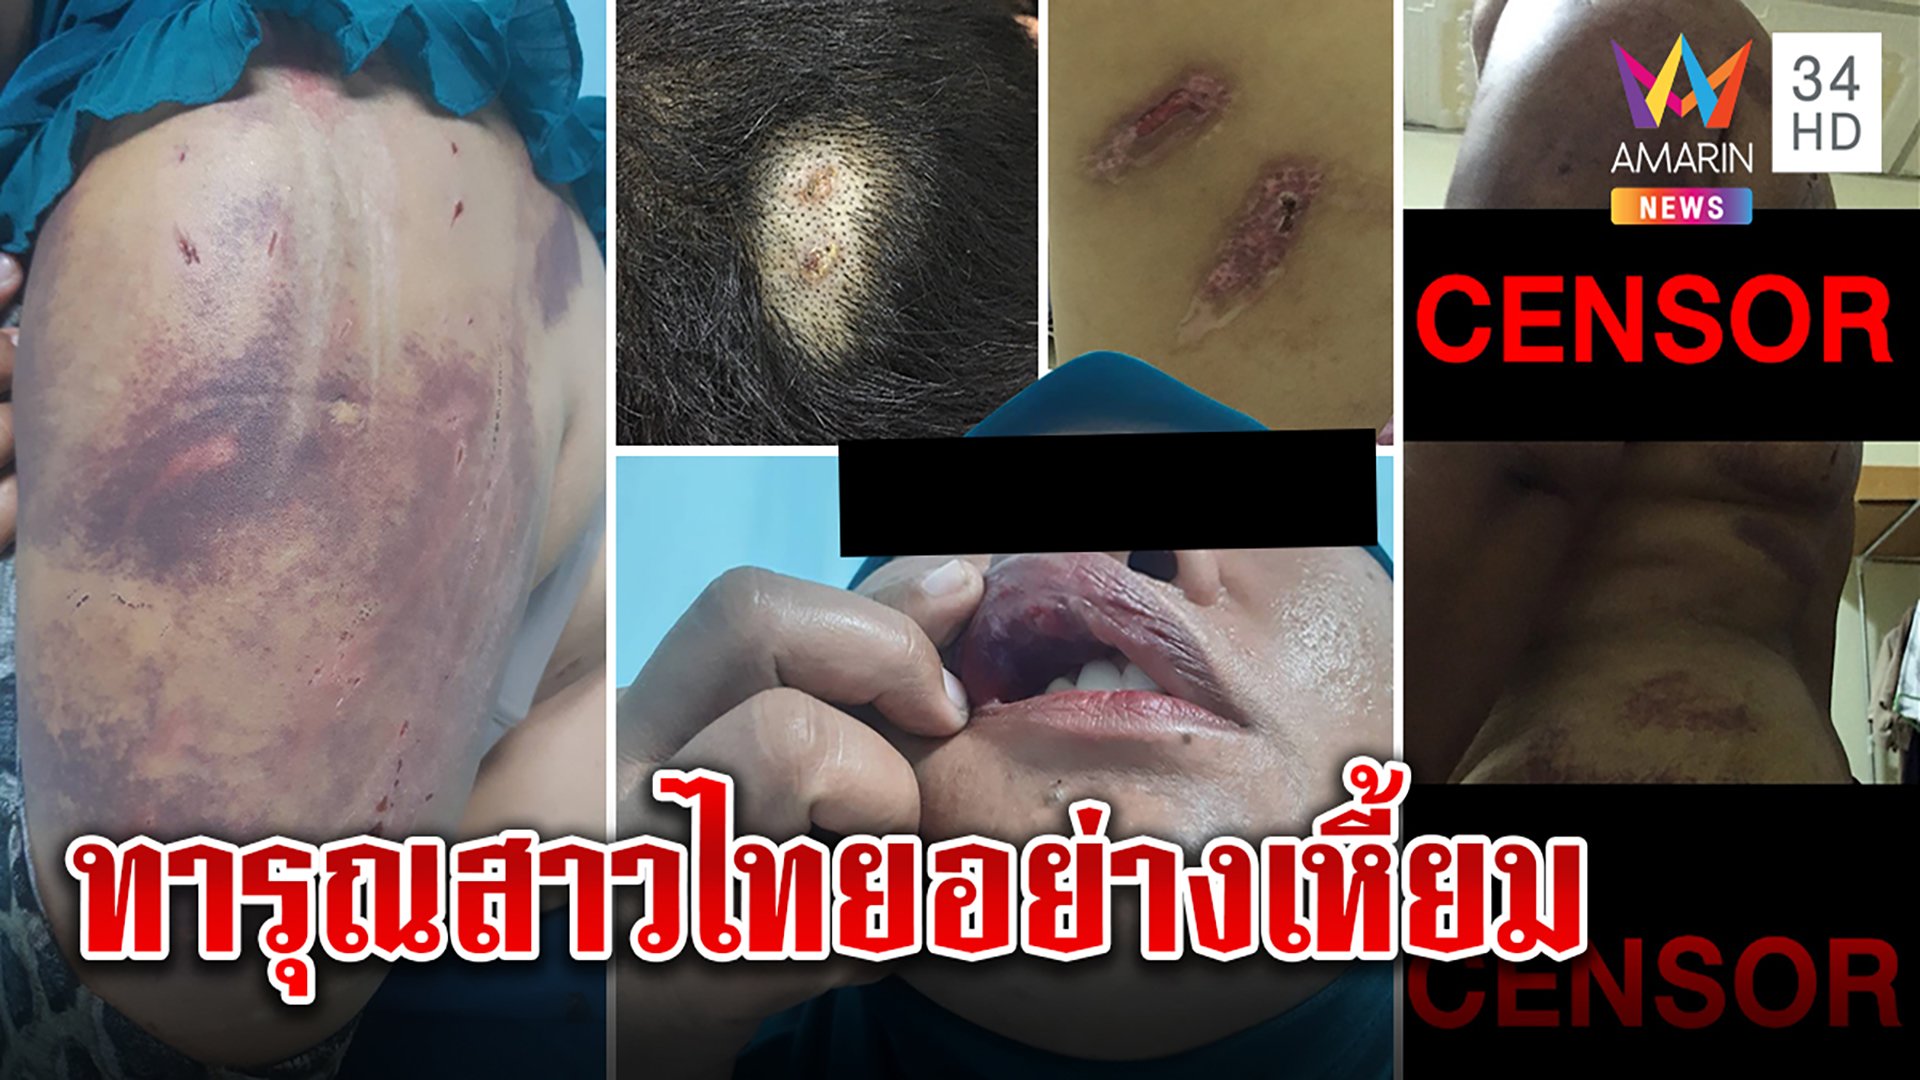 ช็อก! สาวไทยถูกผัวอียิปต์ใช้มีดแทง-ราดน้ำร้อน-ถ่านนาบ เจ็บใกล้ตายแต่ตร.ไม่จับ  | ทุบโต๊ะข่าว | 5 ต.ค. 64 | AMARIN TVHD34